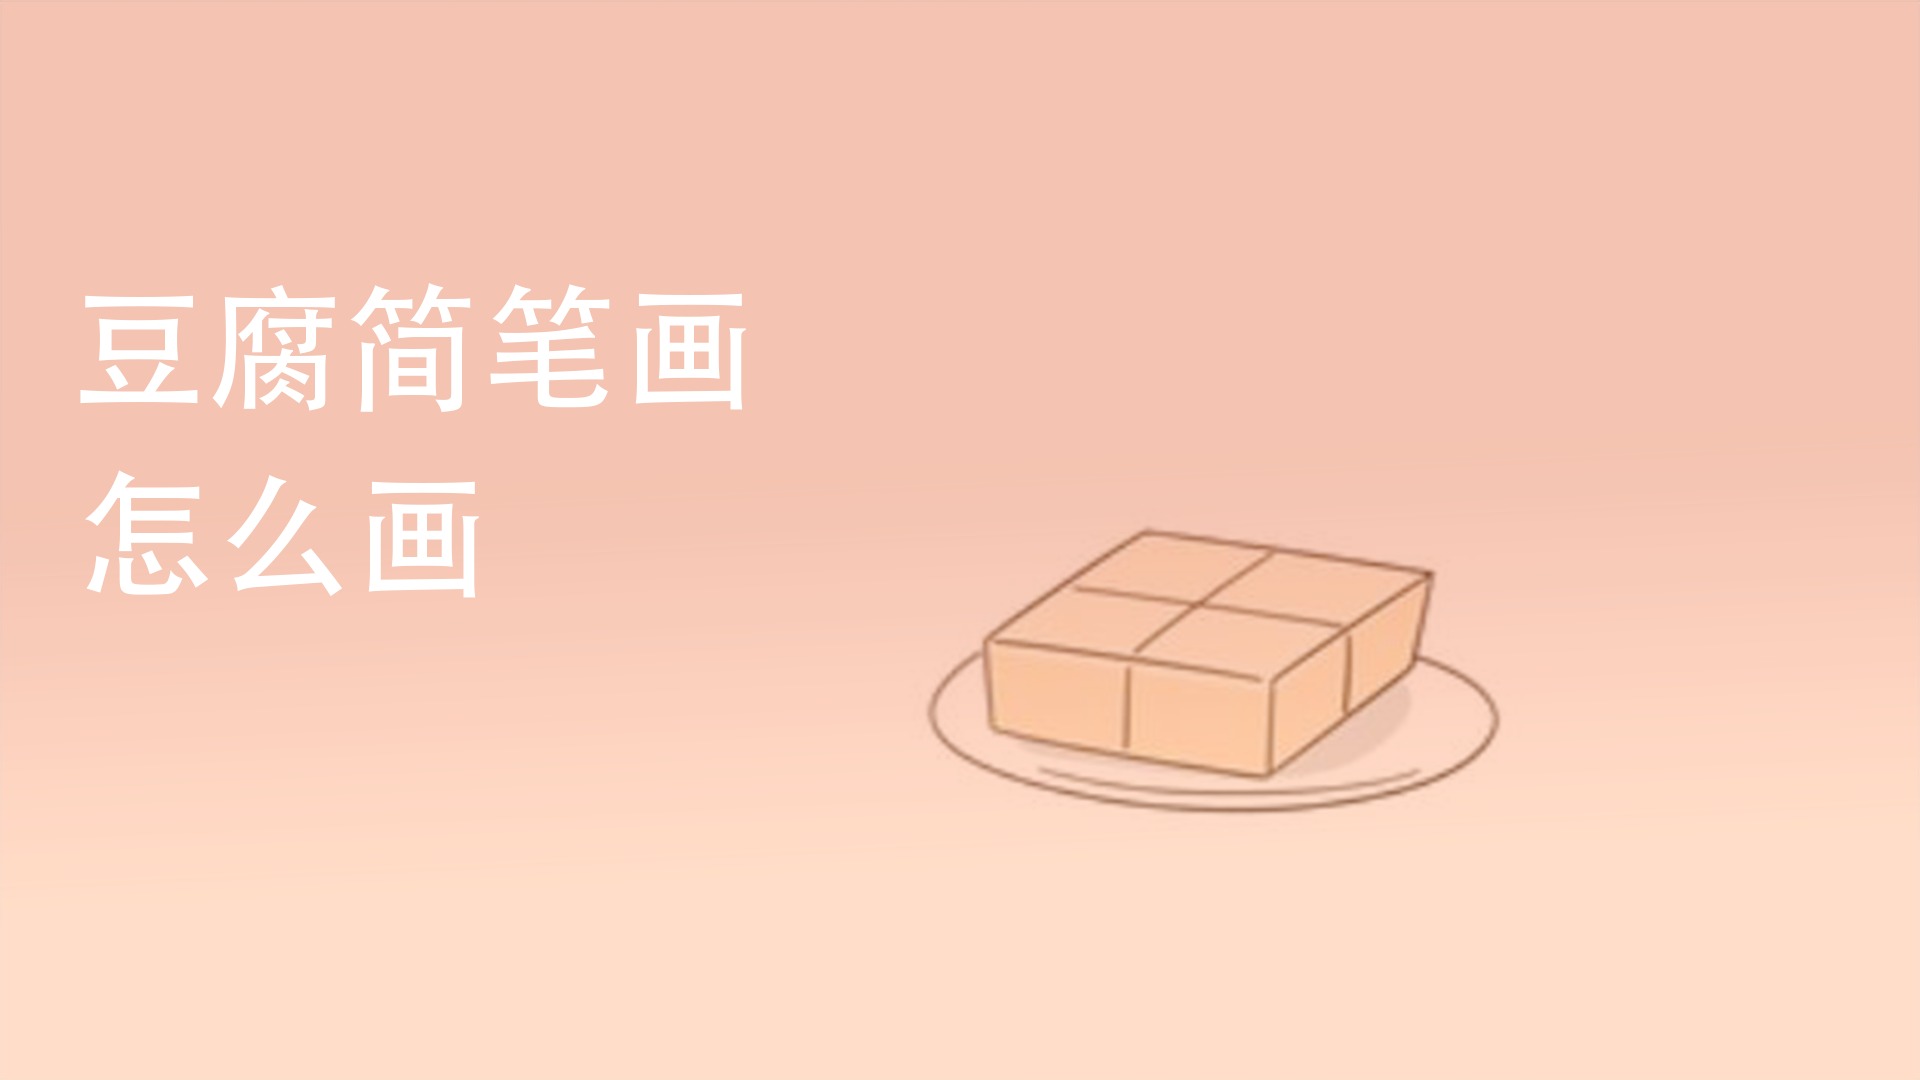 香煎豆腐简笔画图片